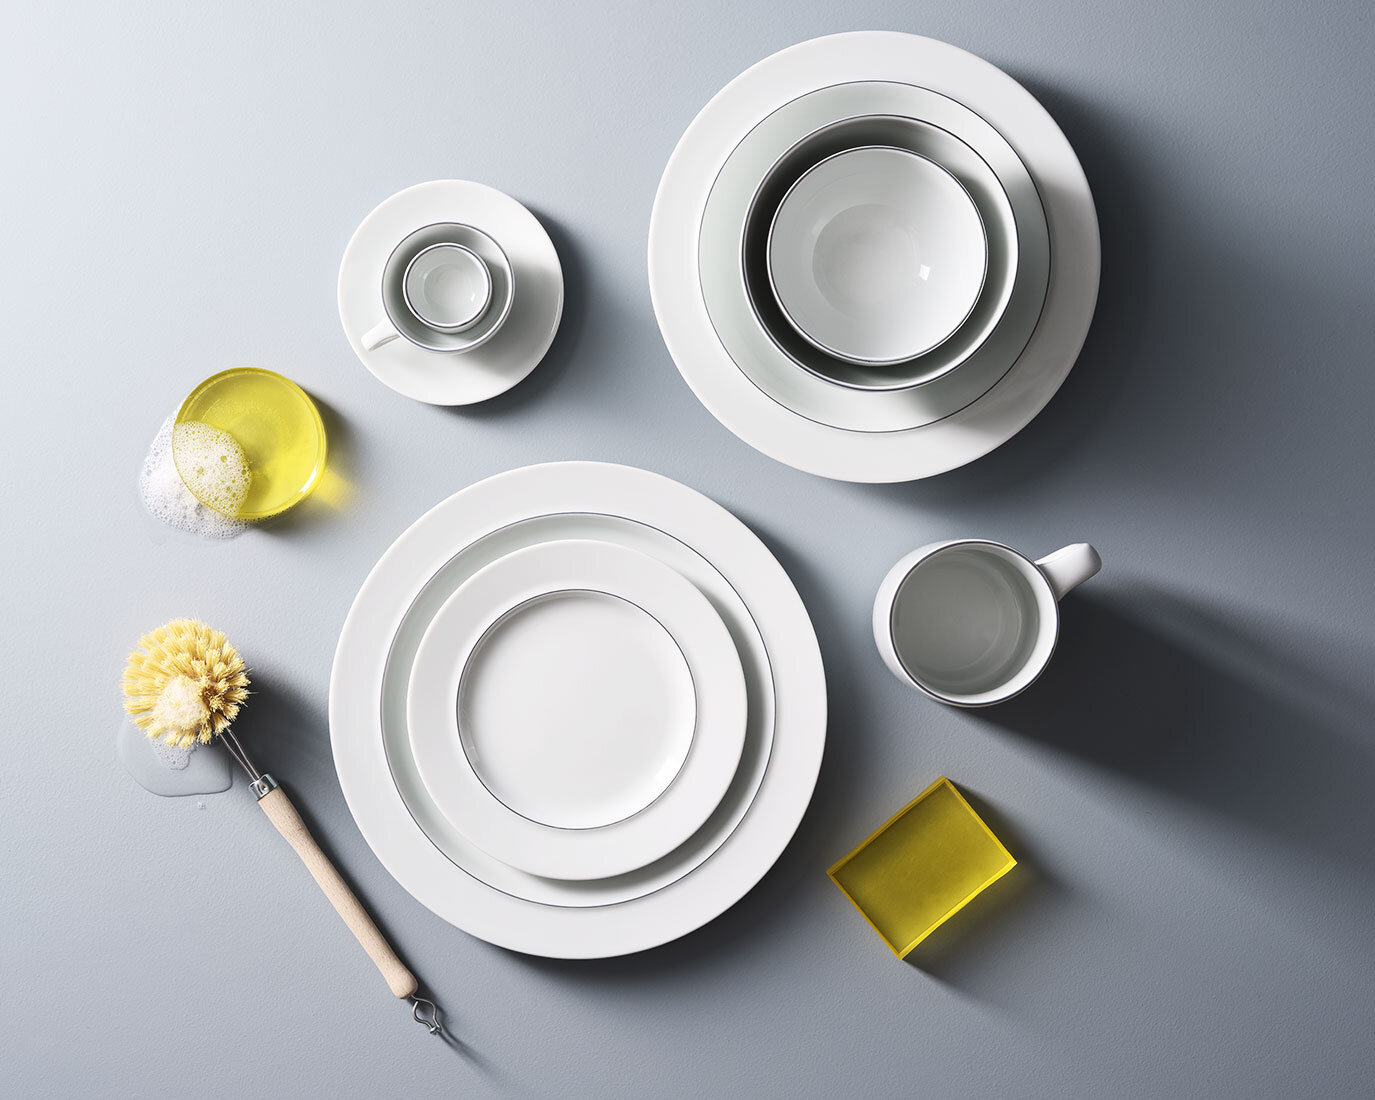   Bodum    Re-launch of porcelain series       